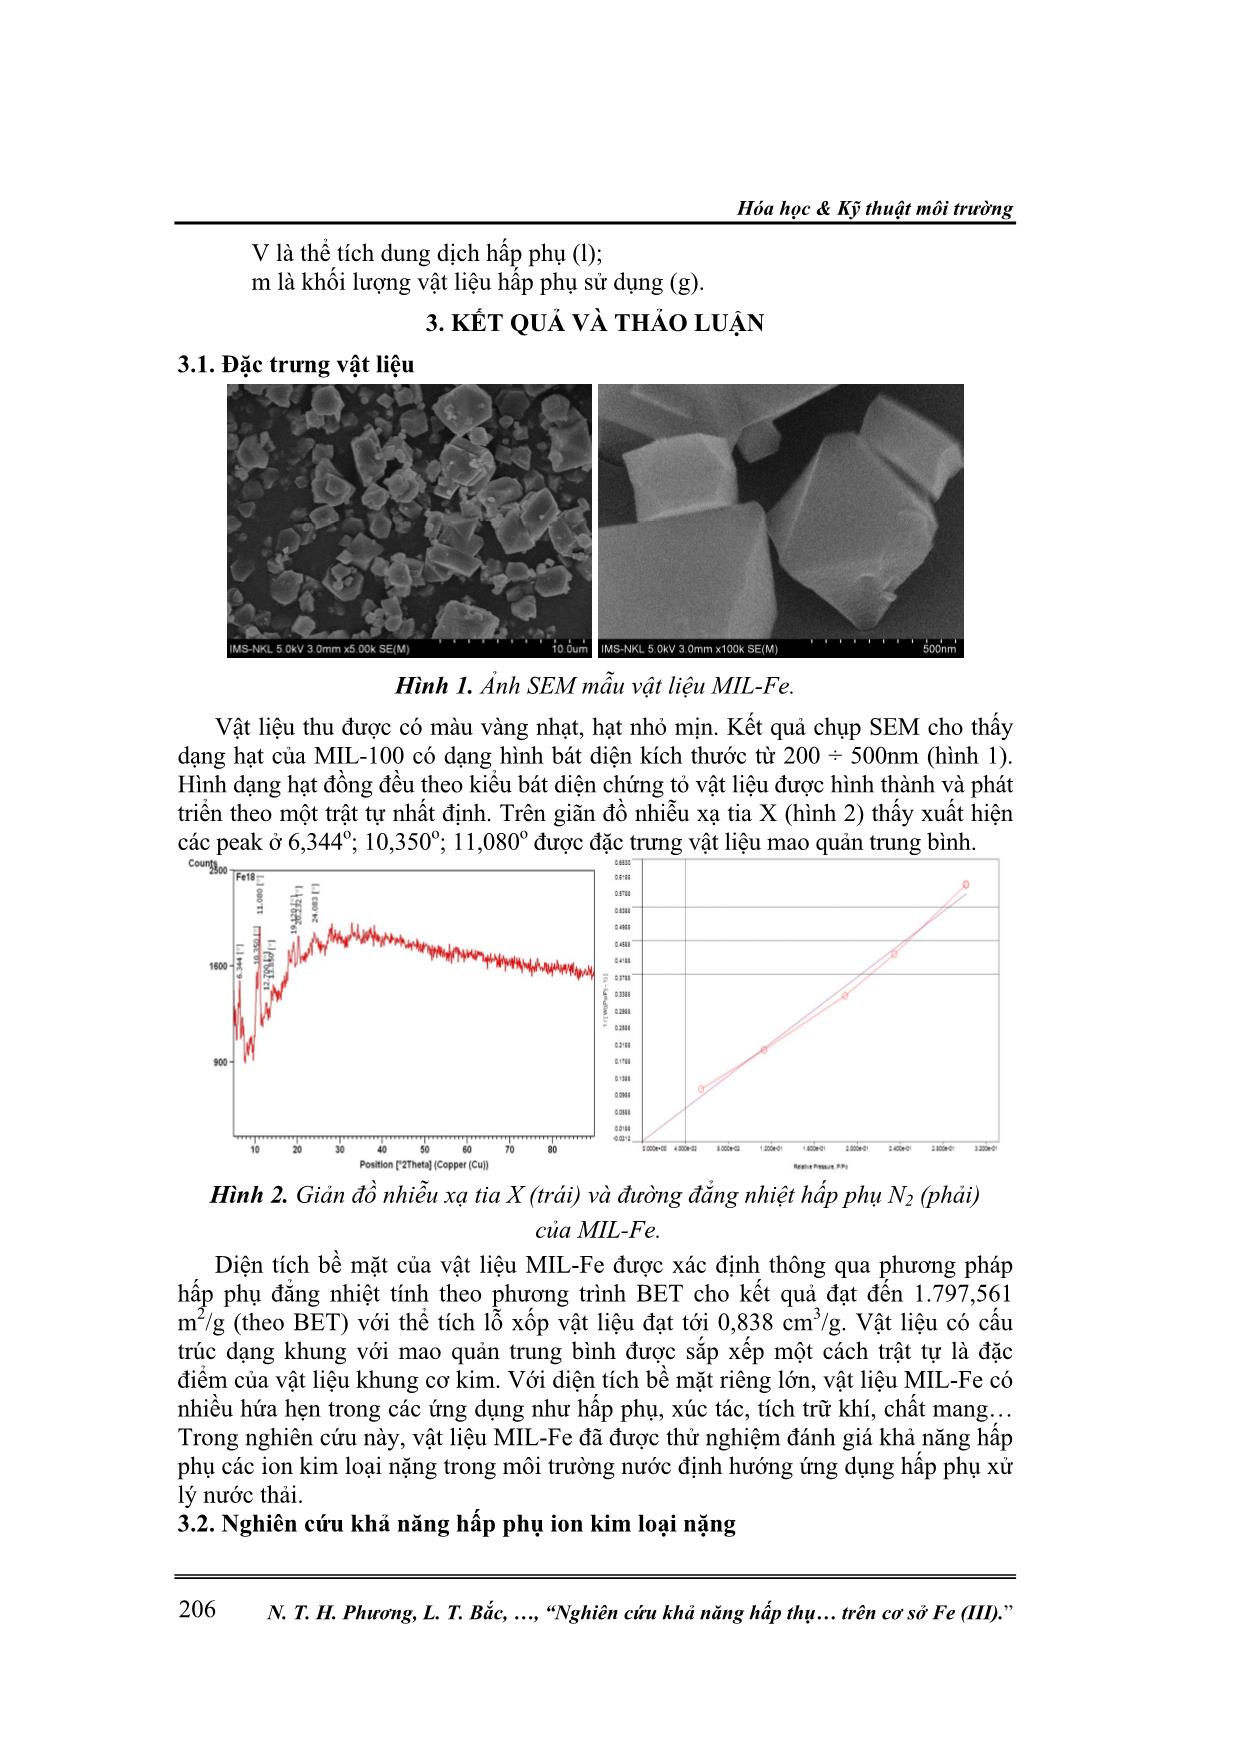 Nghiên cứu khả năng hấp phụ ion kim loại nặng trong môi trường nước của vật liệu khung cơ kim trên cơ sở Fe (III) trang 3